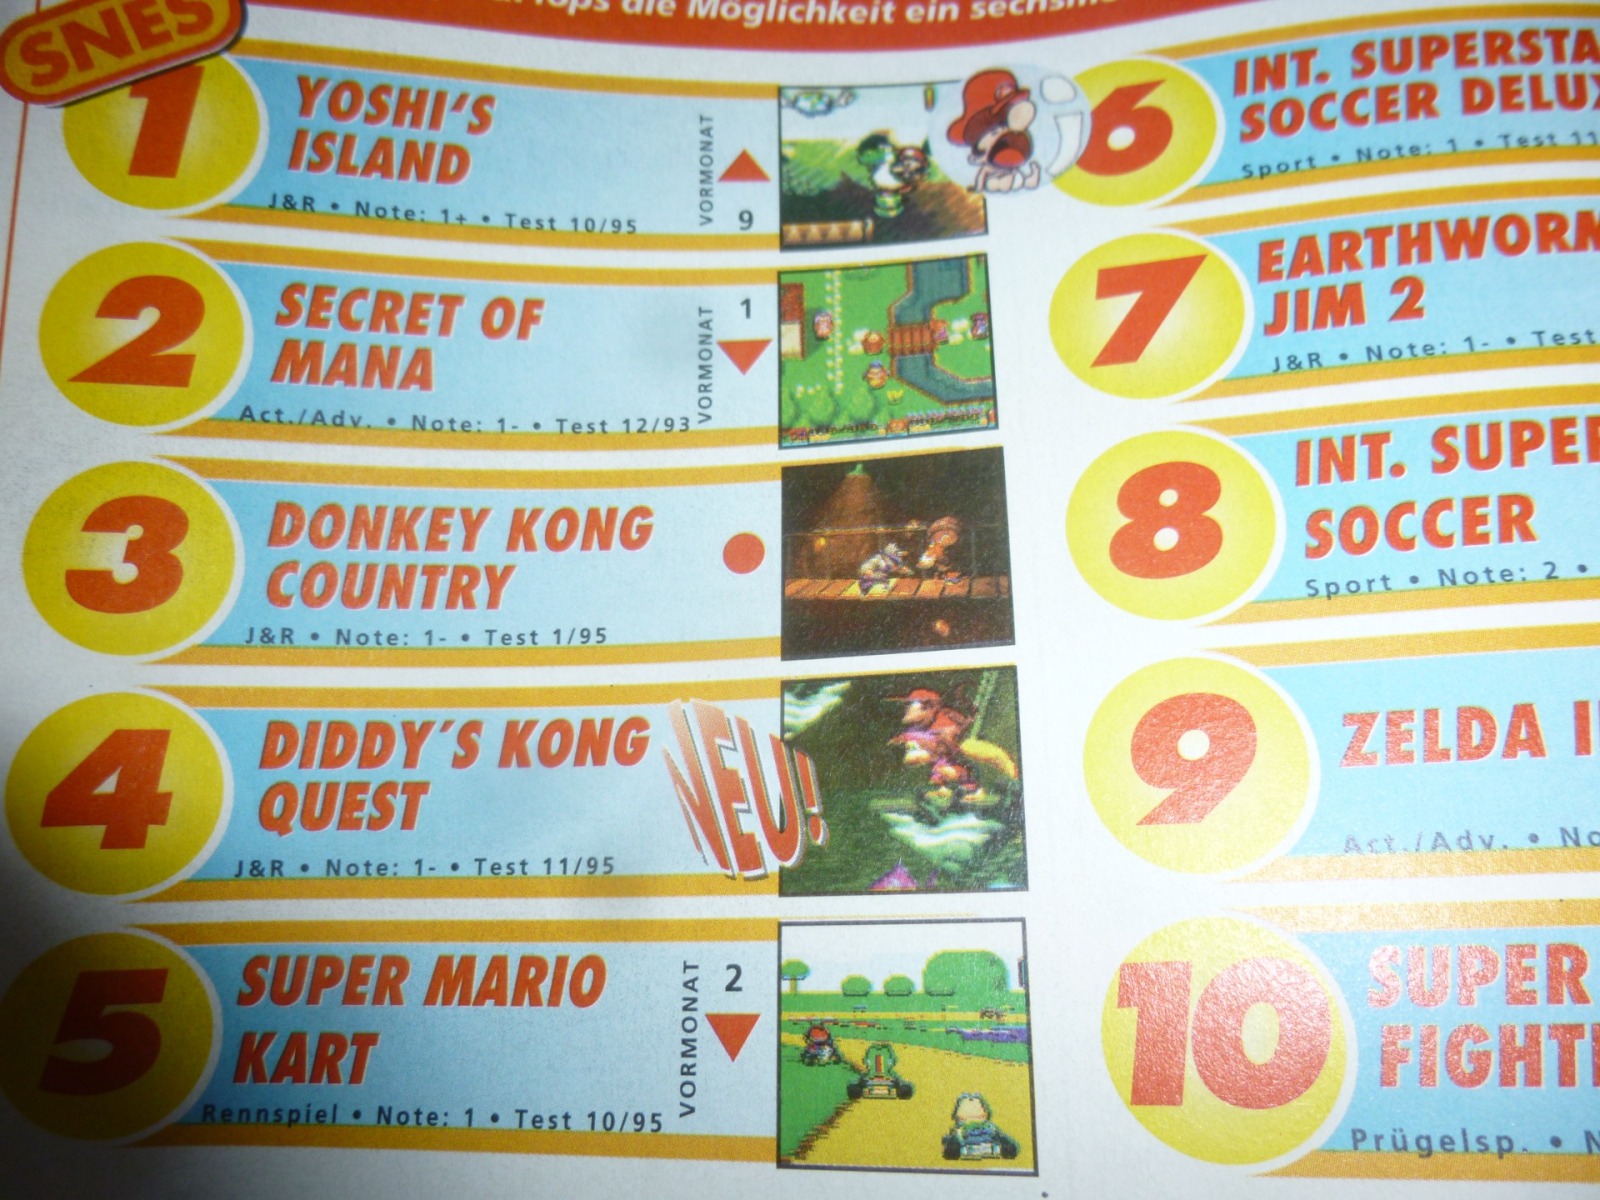 TOTAL Das unabhängige Magazin - 100% Nintendo - Ausgabe 3/96 1996 17